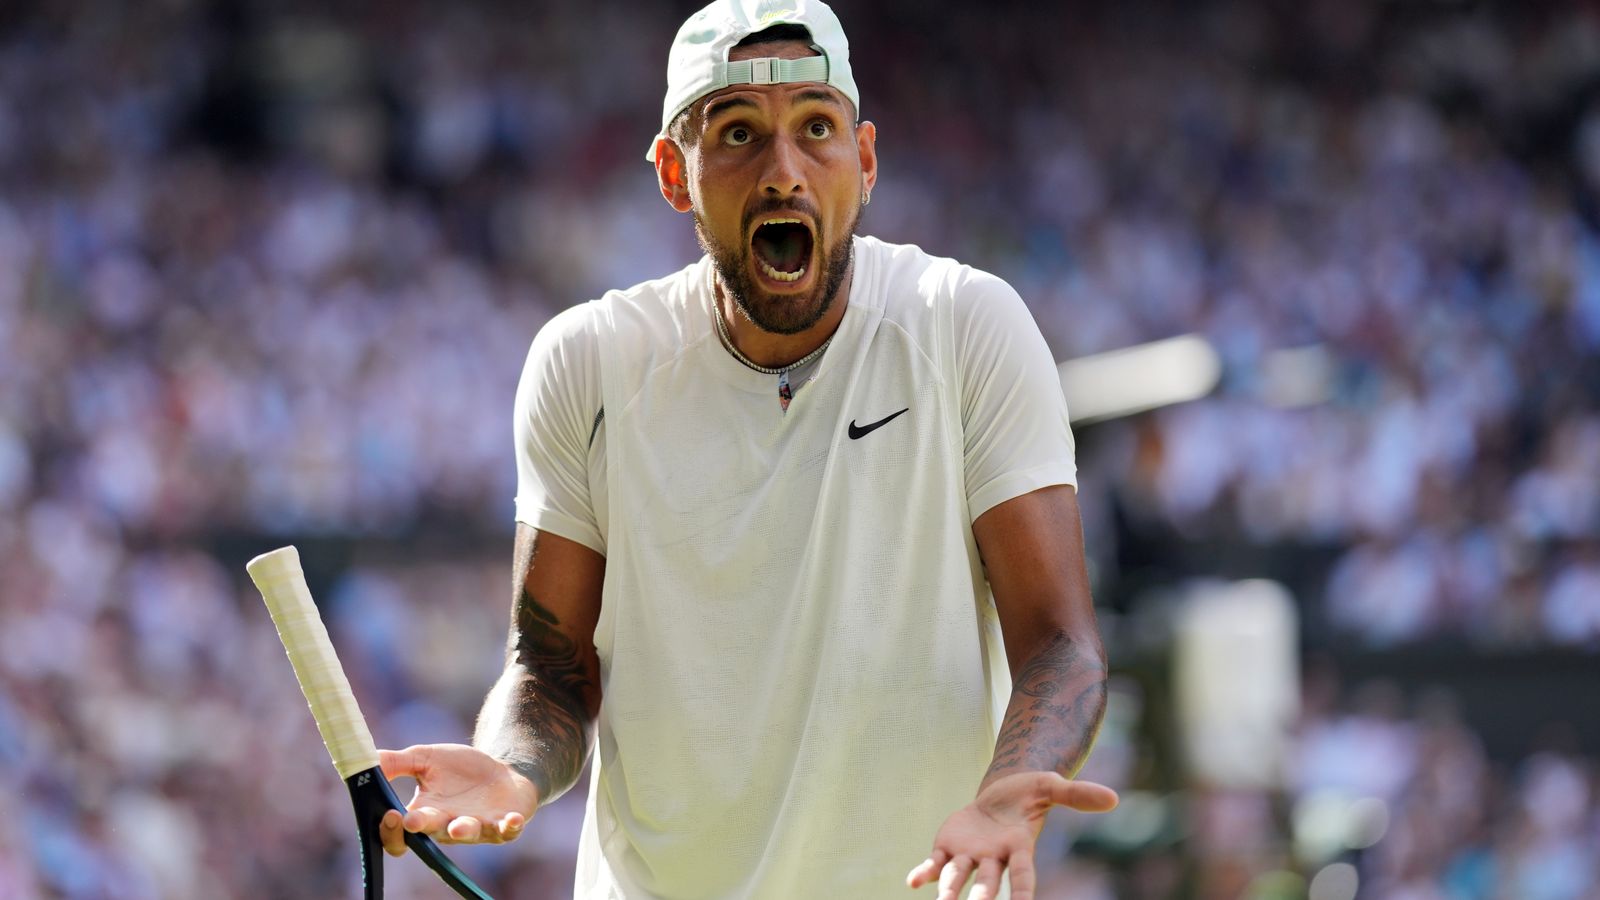 Un spectateur poursuit Nick Kyrgios pour l’accusation de « 700 verres » lors de la finale de Wimbledon |  nouvelles du monde